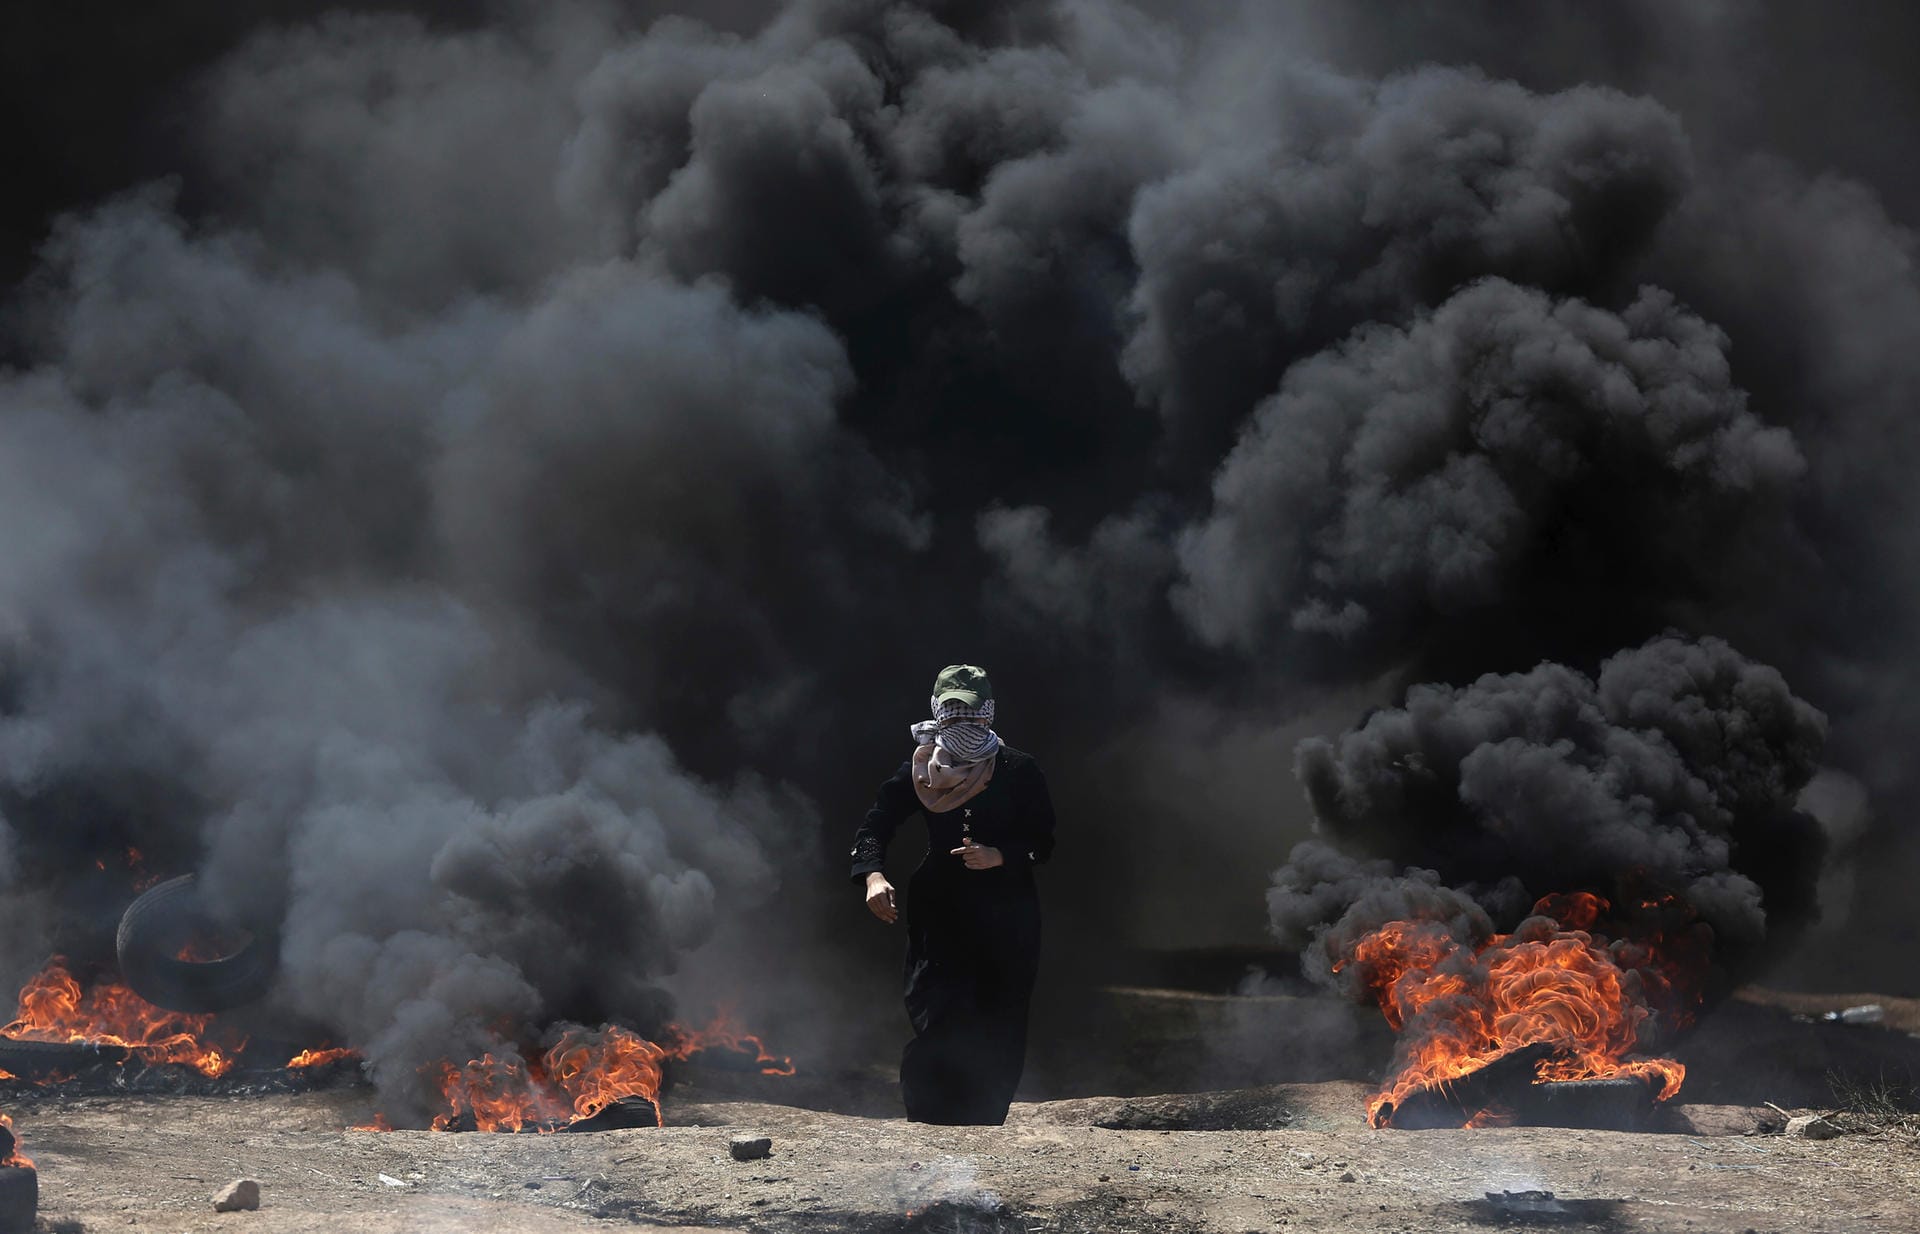 Eine palästinensische Frau läuft durch den schwarzen Rauch der brennenden Autoreifen.